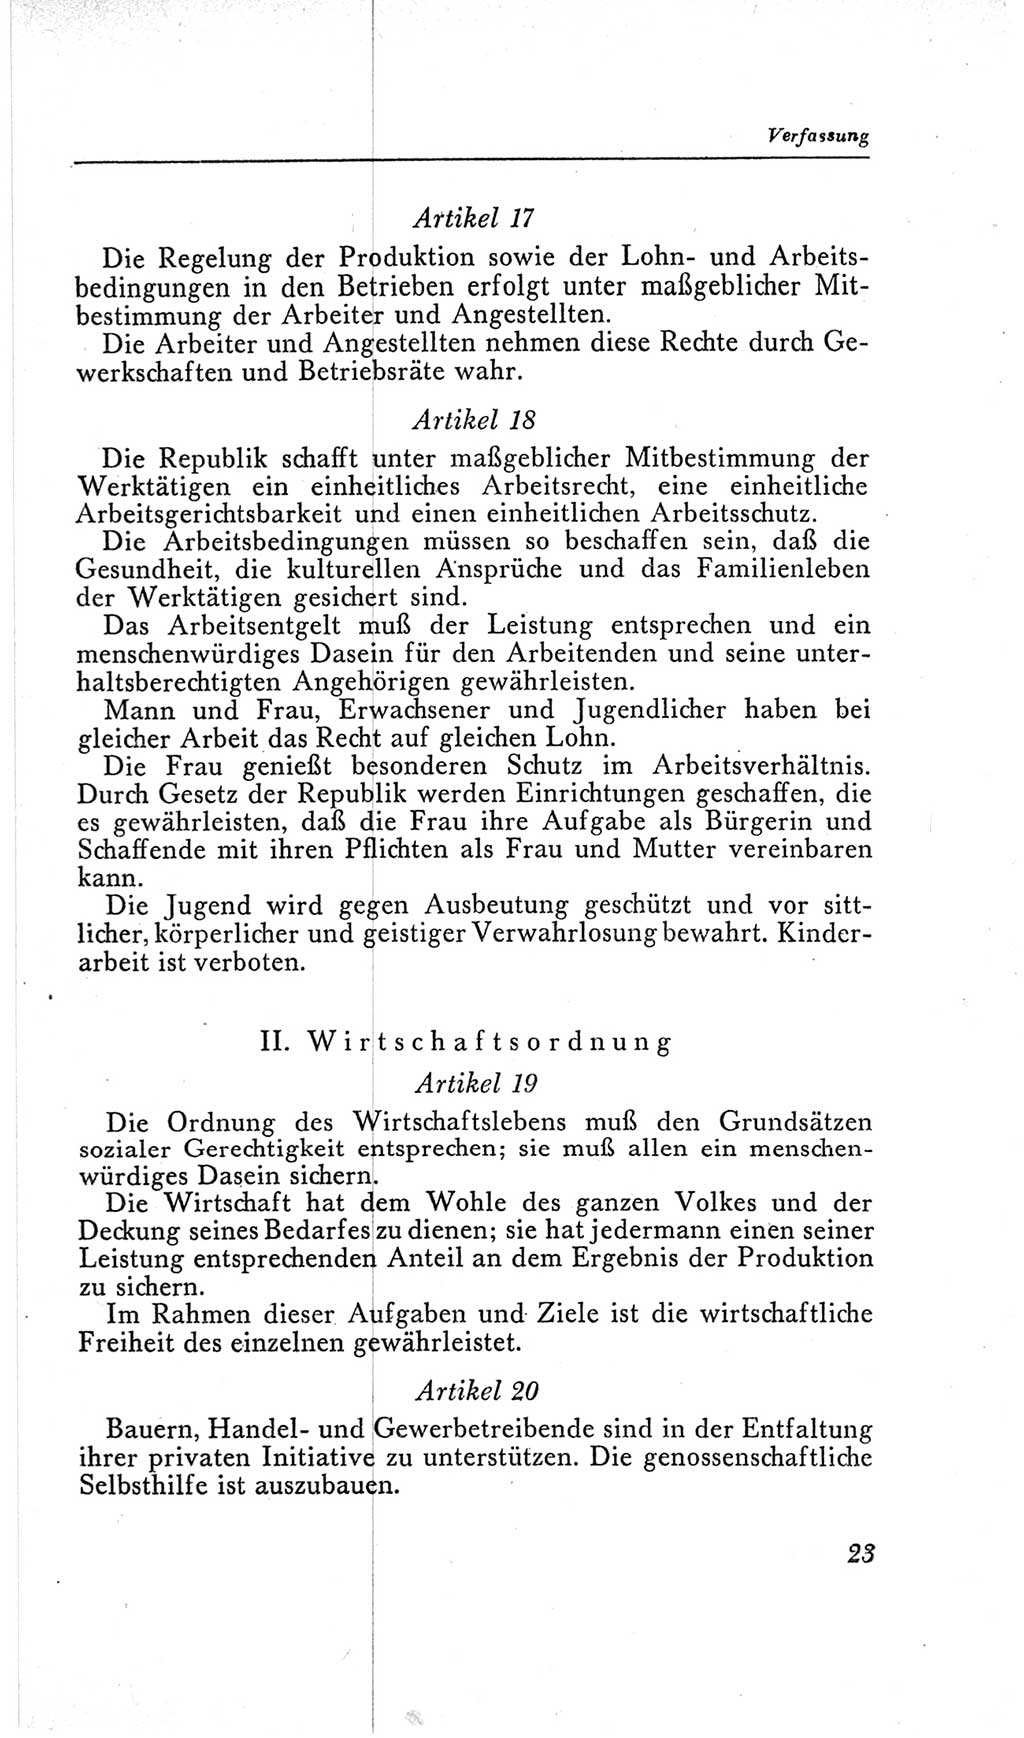 Handbuch der Volkskammer (VK) der Deutschen Demokratischen Republik (DDR), 2. Wahlperiode 1954-1958, Seite 23 (Hdb. VK. DDR, 2. WP. 1954-1958, S. 23)